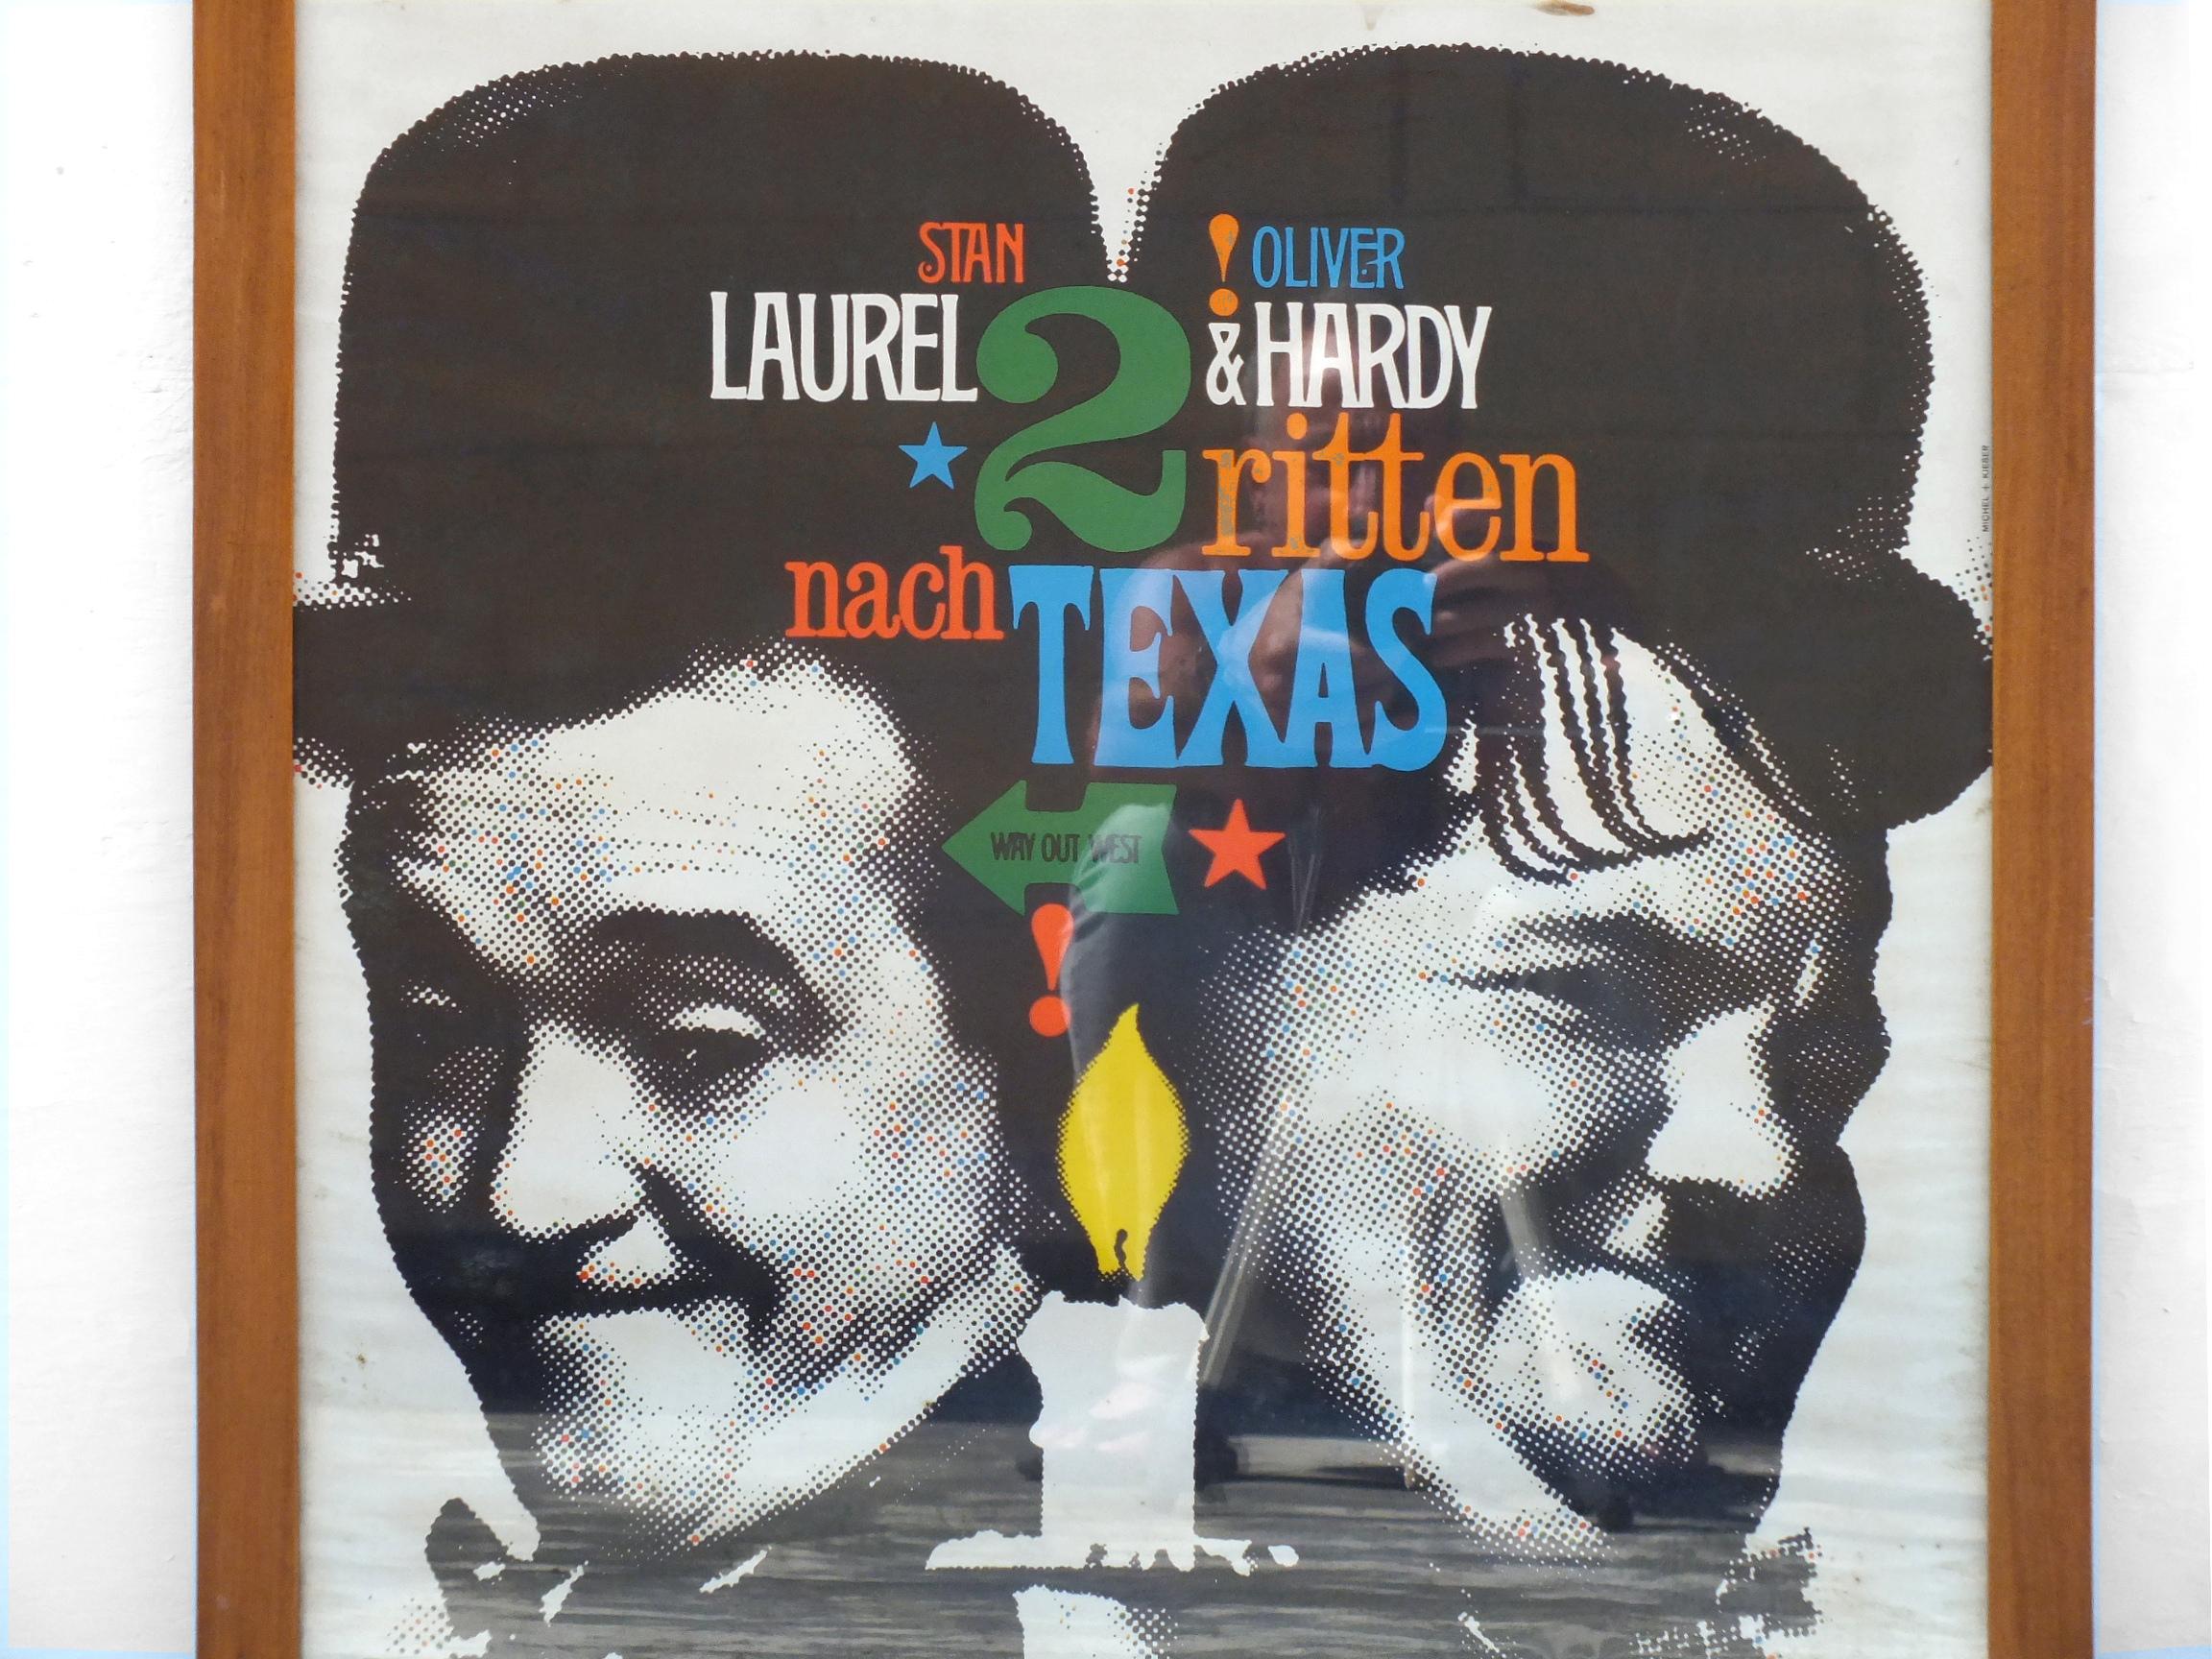 Stan Laurel & Oliver Hardy 2 ritten nach texas / Way Out West par Gunther Kieser & Hans Michel années '60,  Fsk freigegeben movie

l'affiche a un cadre élégant en bois et est en bon état d'usage avec des signes d'âge et est originale de l'époque